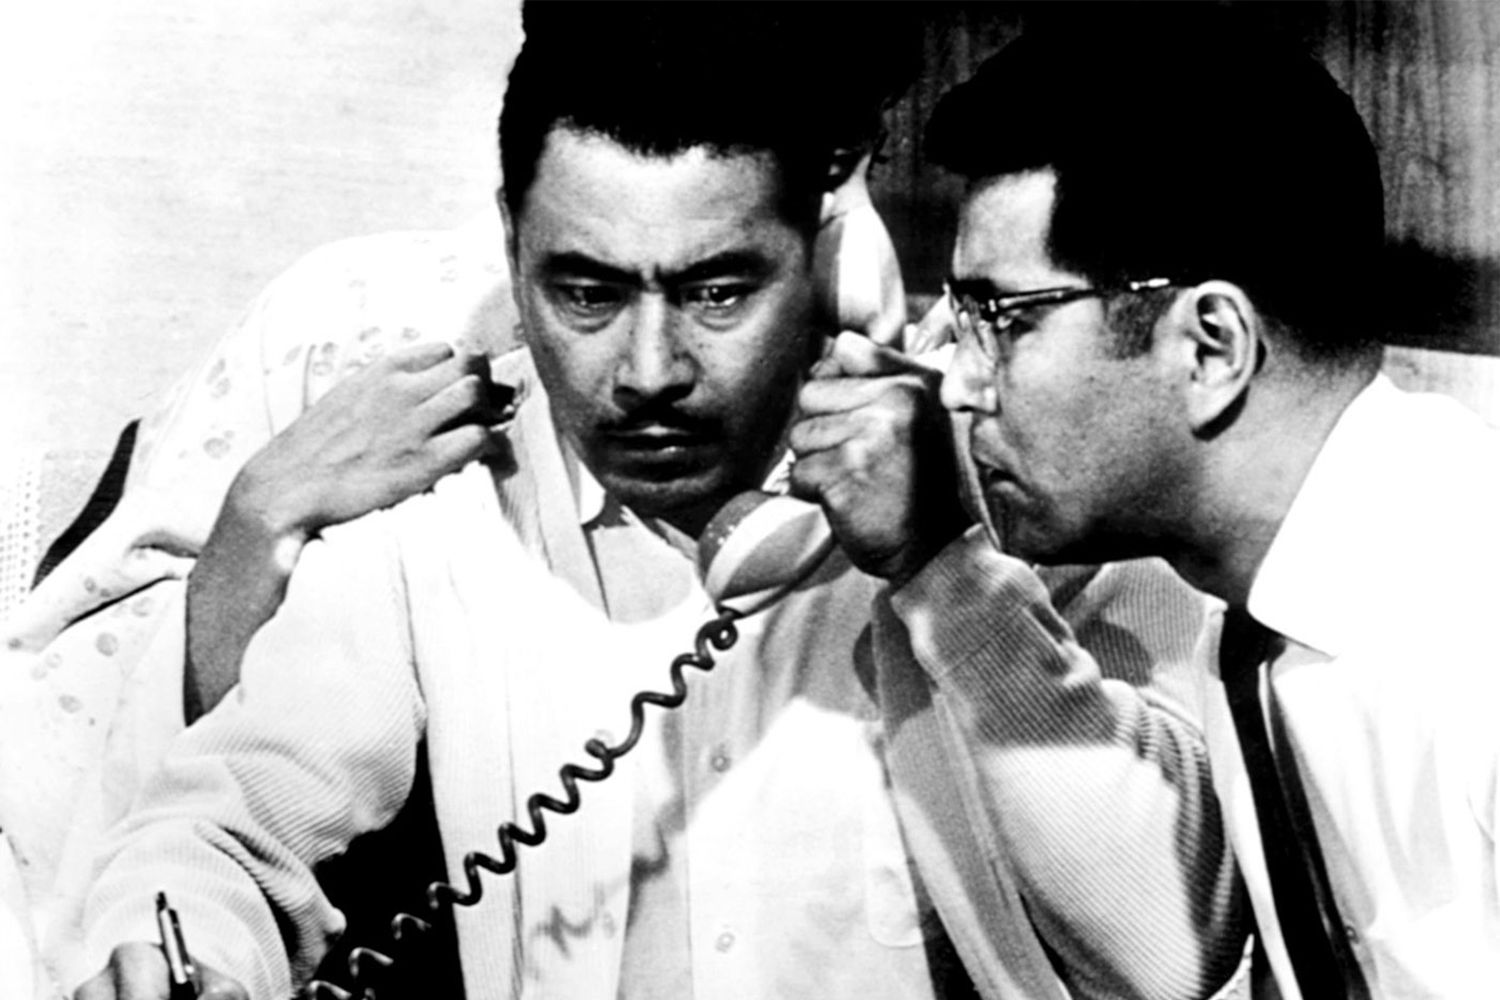 HIGH AND LOW, (aka TENGOKU TO JIGOKU), Toshiro Mifune, Kyoko Kagawa (behind Mifune), Tatsuya Mihashi, 1963